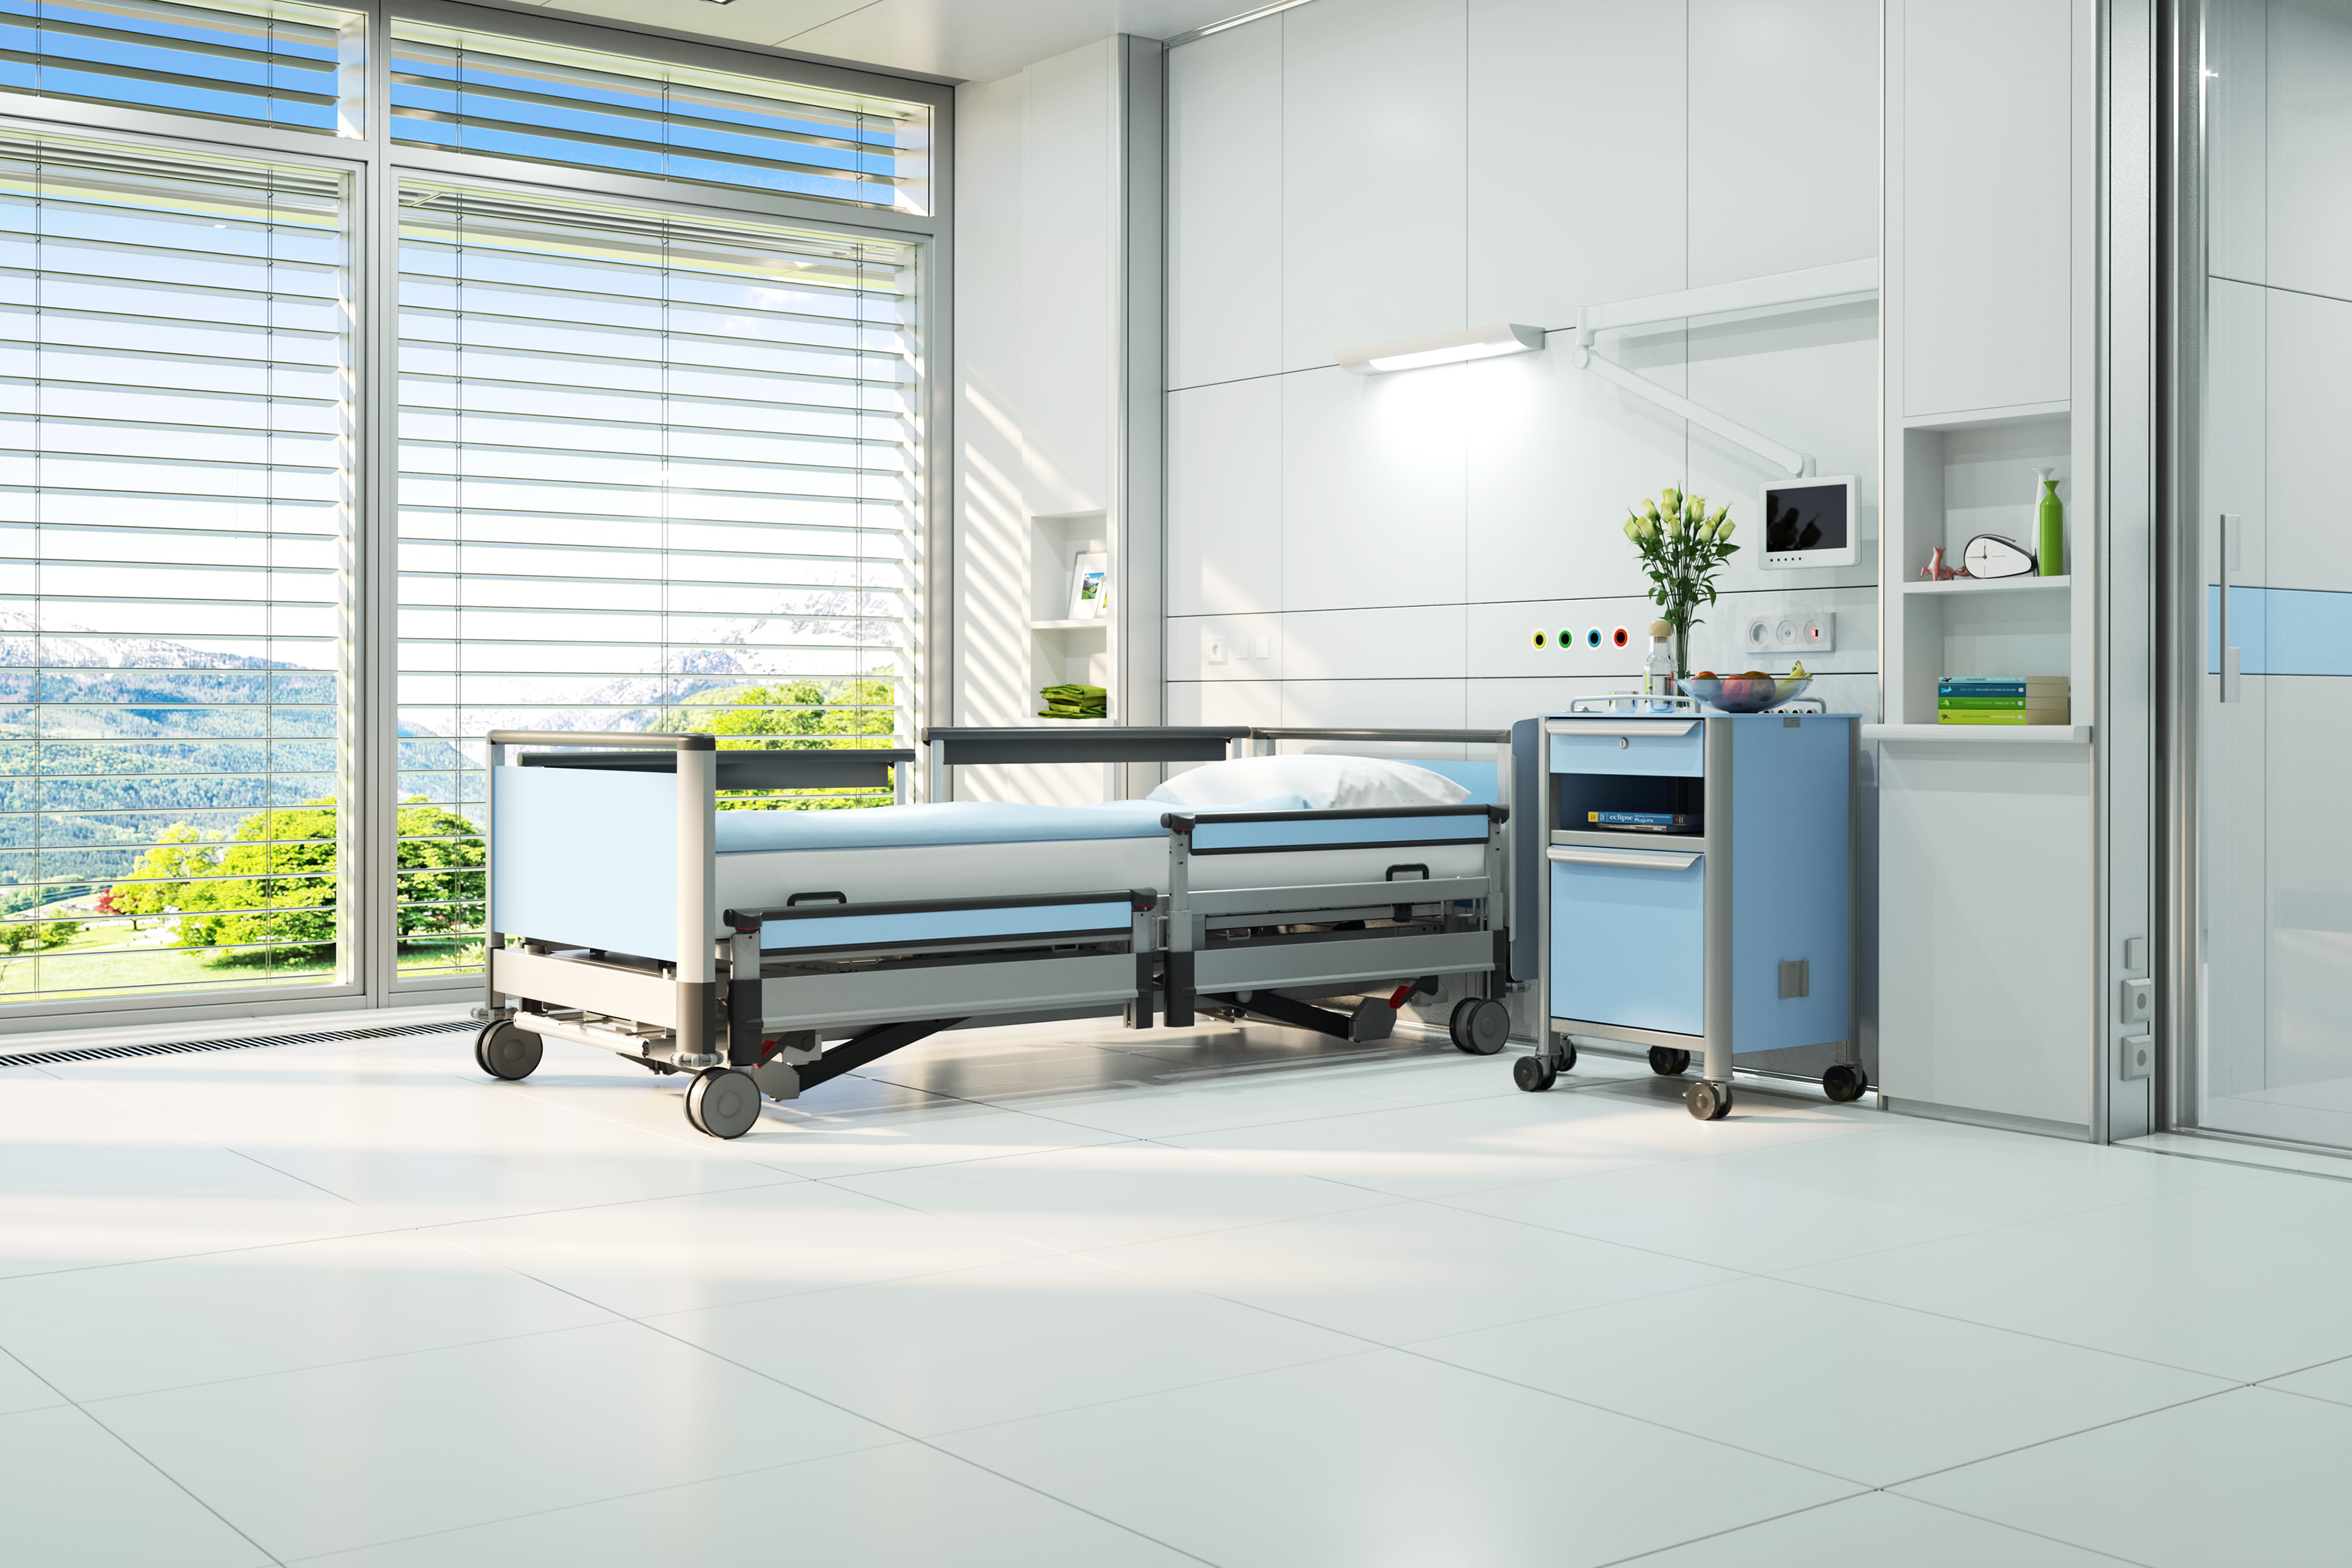 Das neue Klinikbett image3-w wurde speziell entwickelt für den effektiven Einsatz in Waschstraßen und Dekontaminationszentren